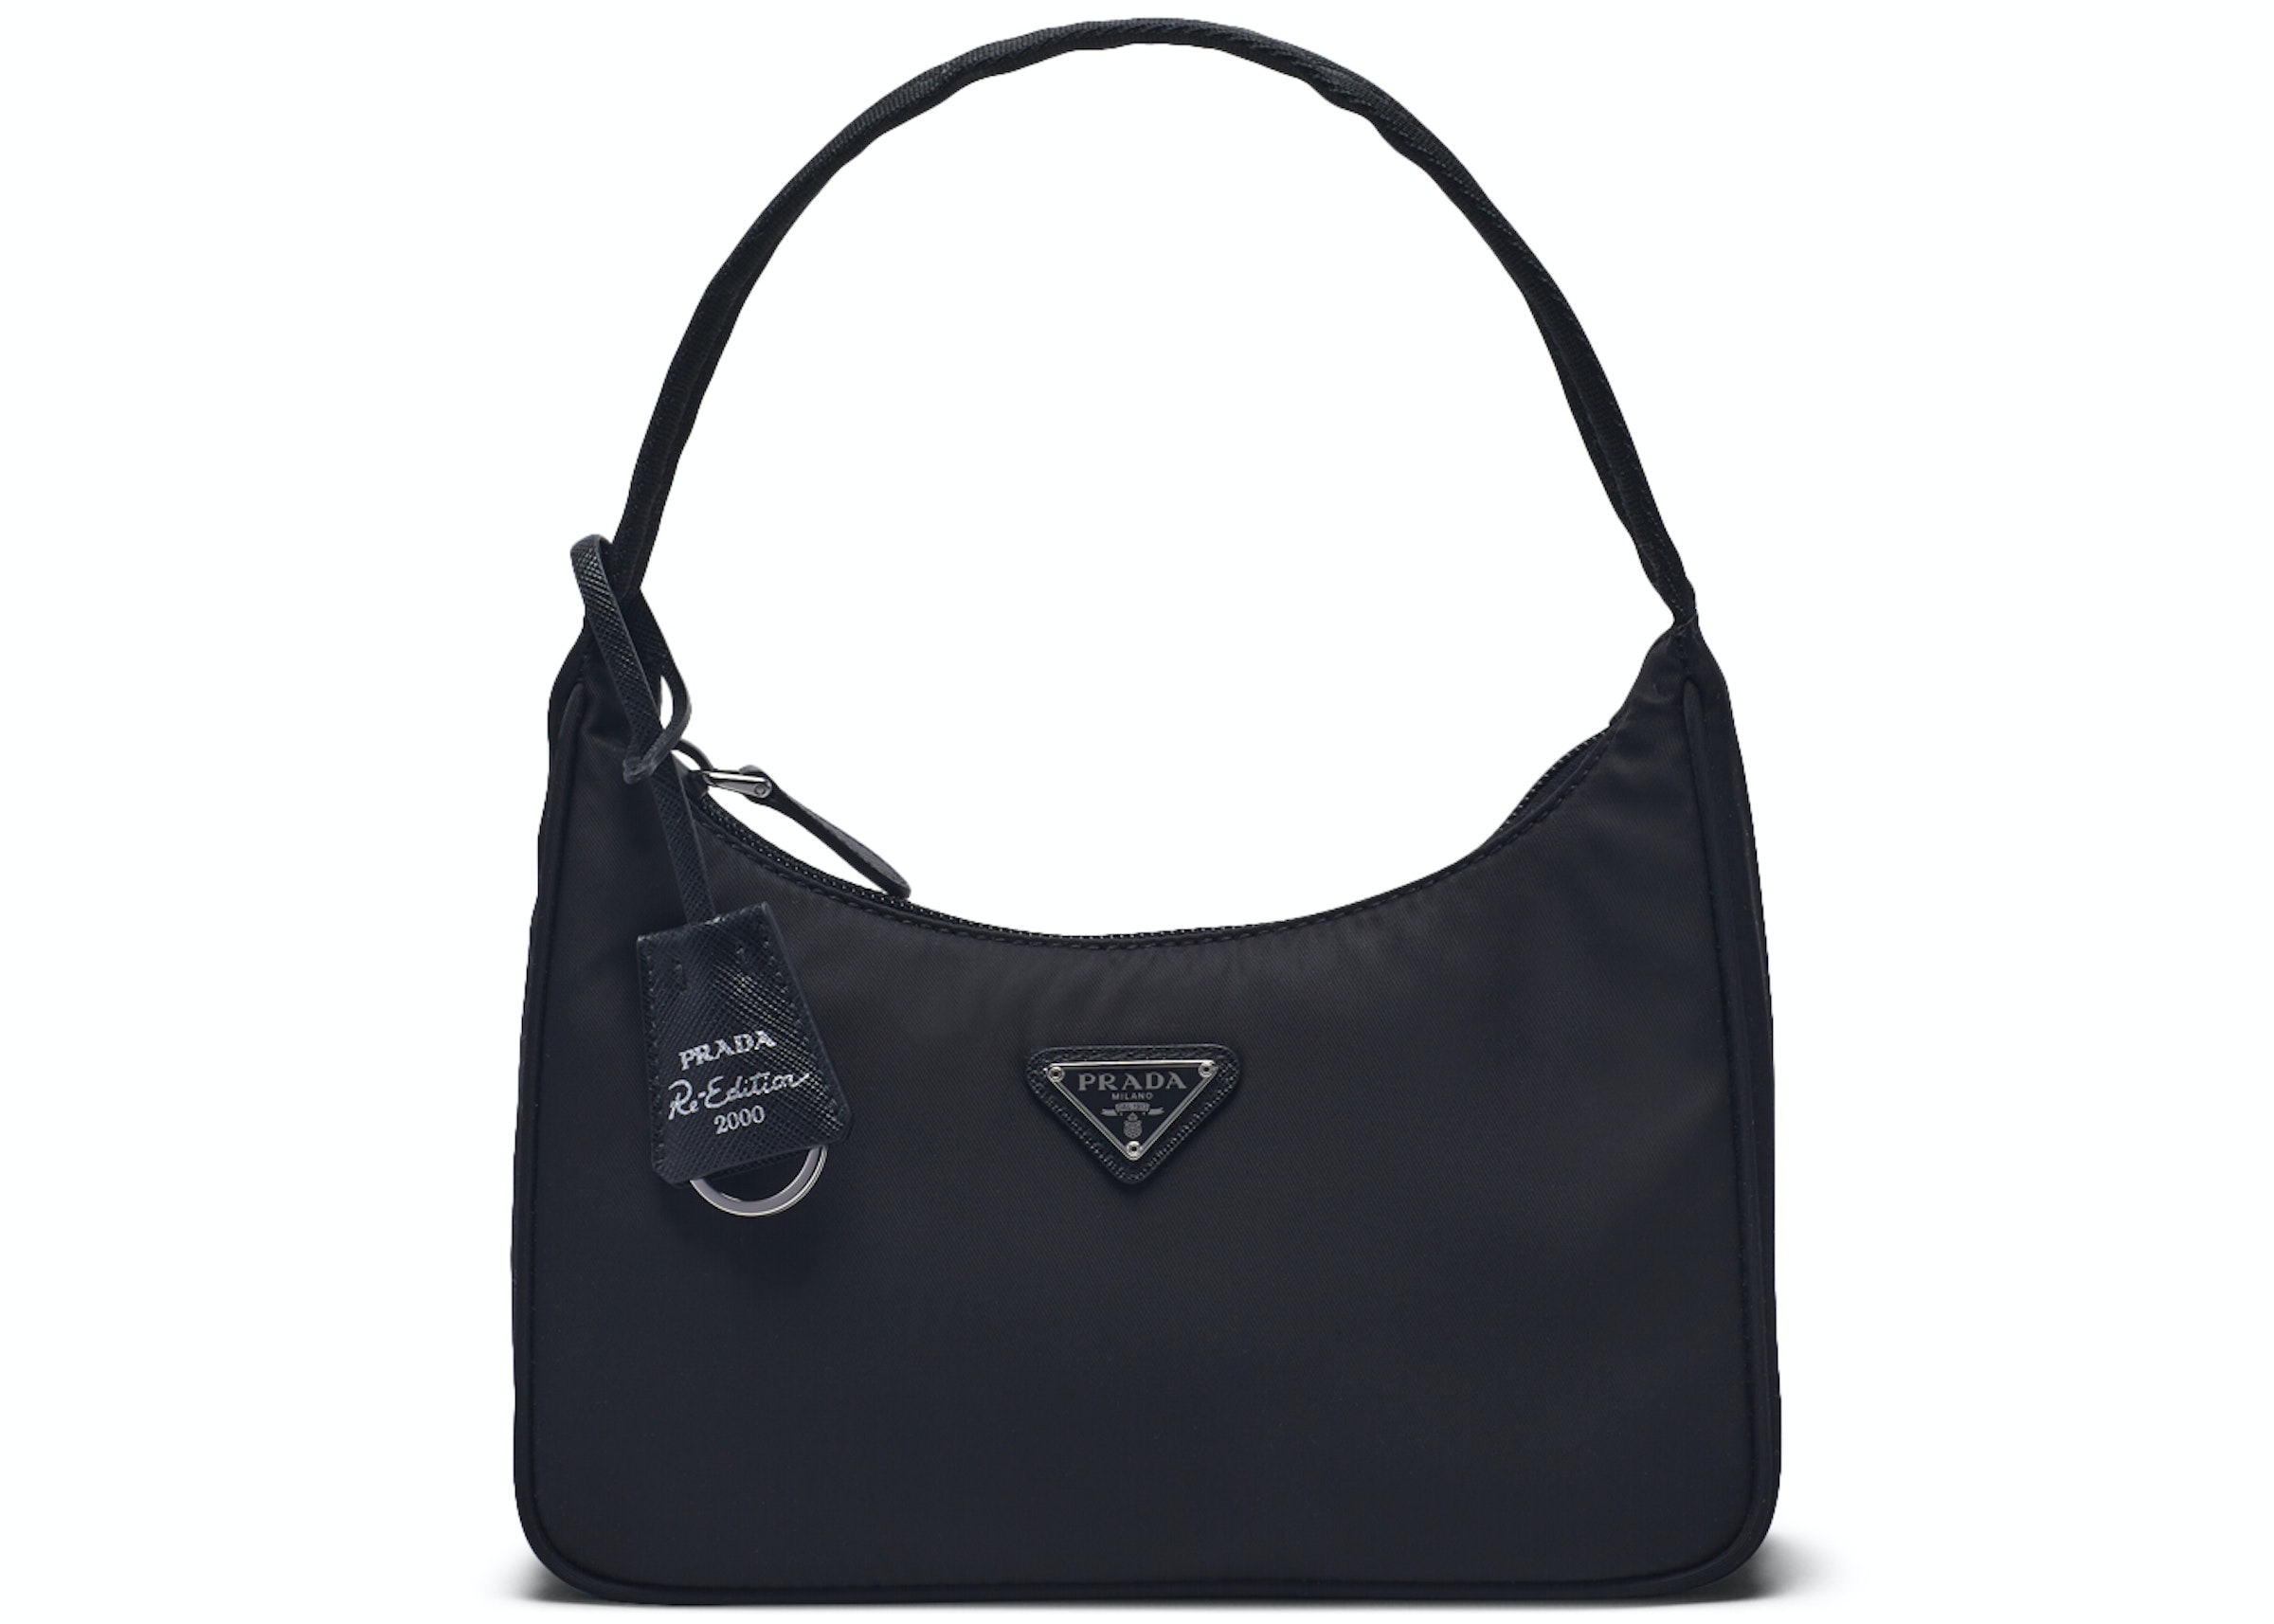 Prada Re-Edition 2000 Mini Bag Nylon Black in Nylon/Saffiano Leather with  Silver-tone - US